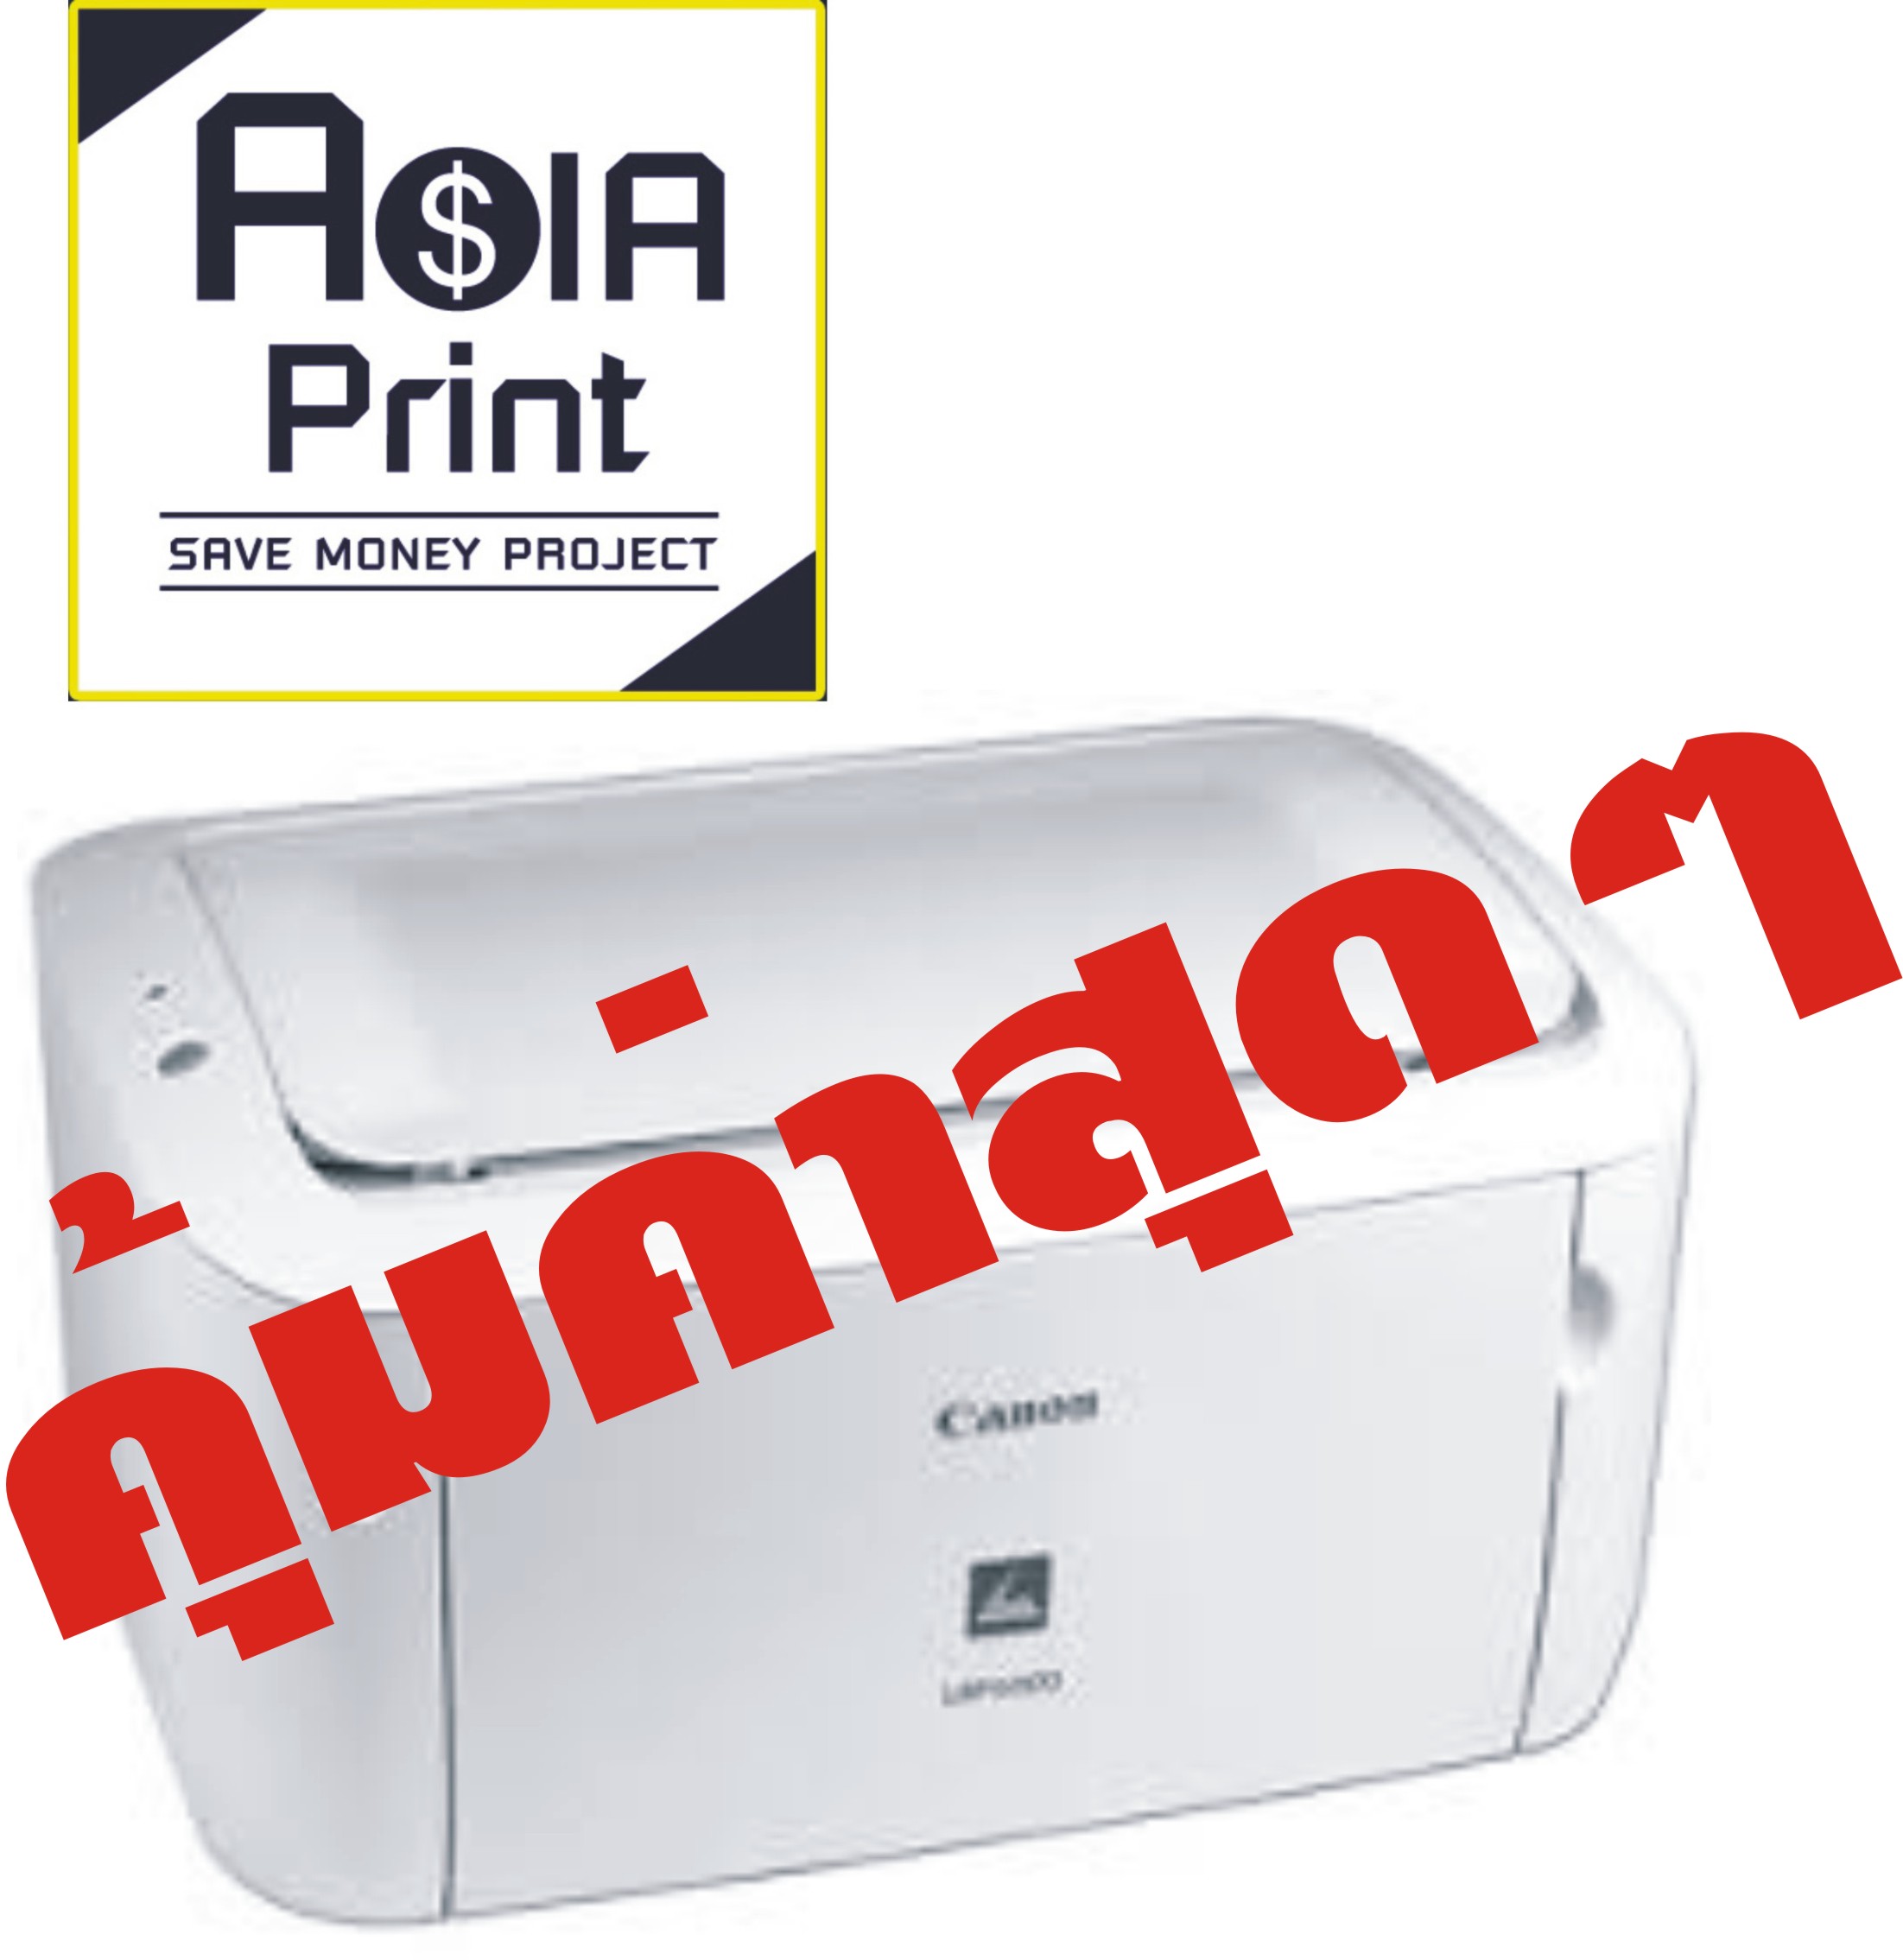 Asiaprint Save Money Project ขอเสนอ Canon LBP 6000 เครื่องพิมพ์ยอดนิยม สภาพขาวสะอาด ราคาประหยัด หมึกถูกมาก (ตามแบบฉบับ ASIA PRINT) รูปที่ 1